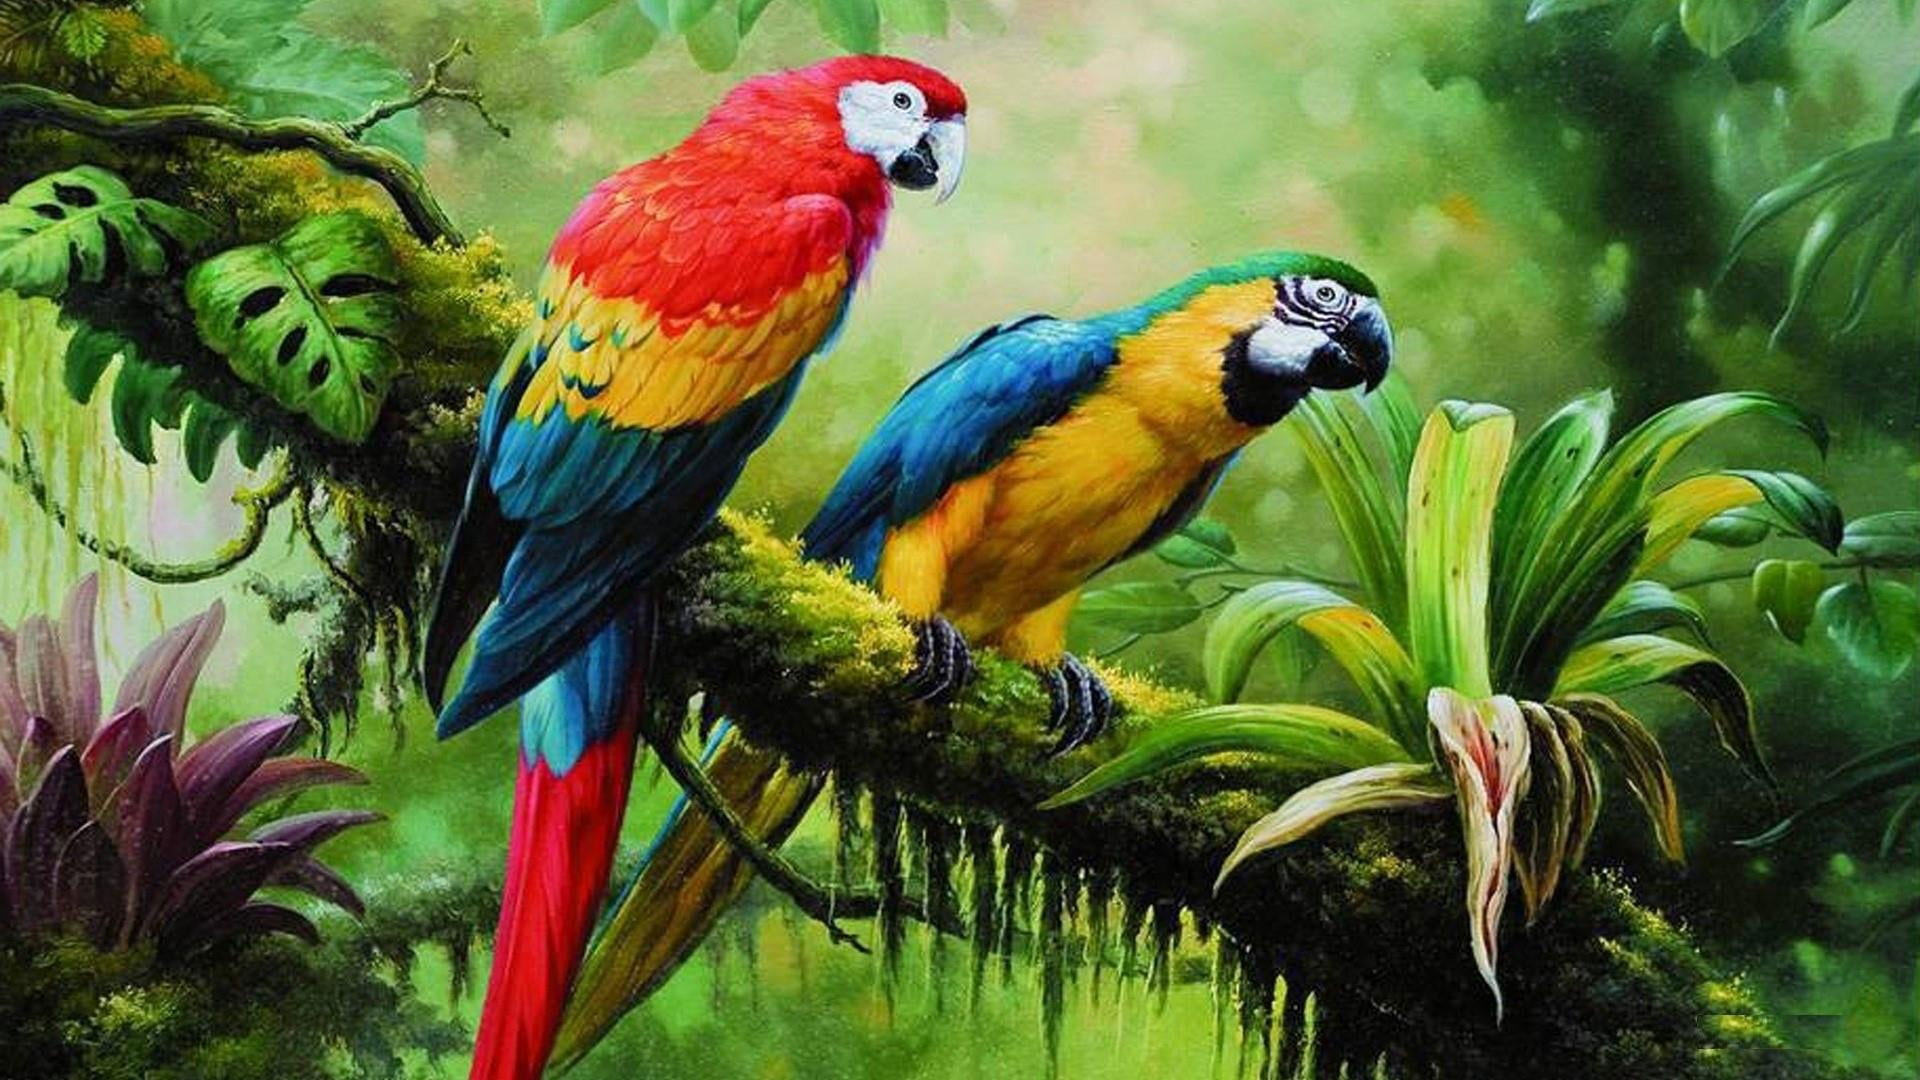 Bird wallpaper, parrot, jungle, brach, parrots, painting art, birds ...